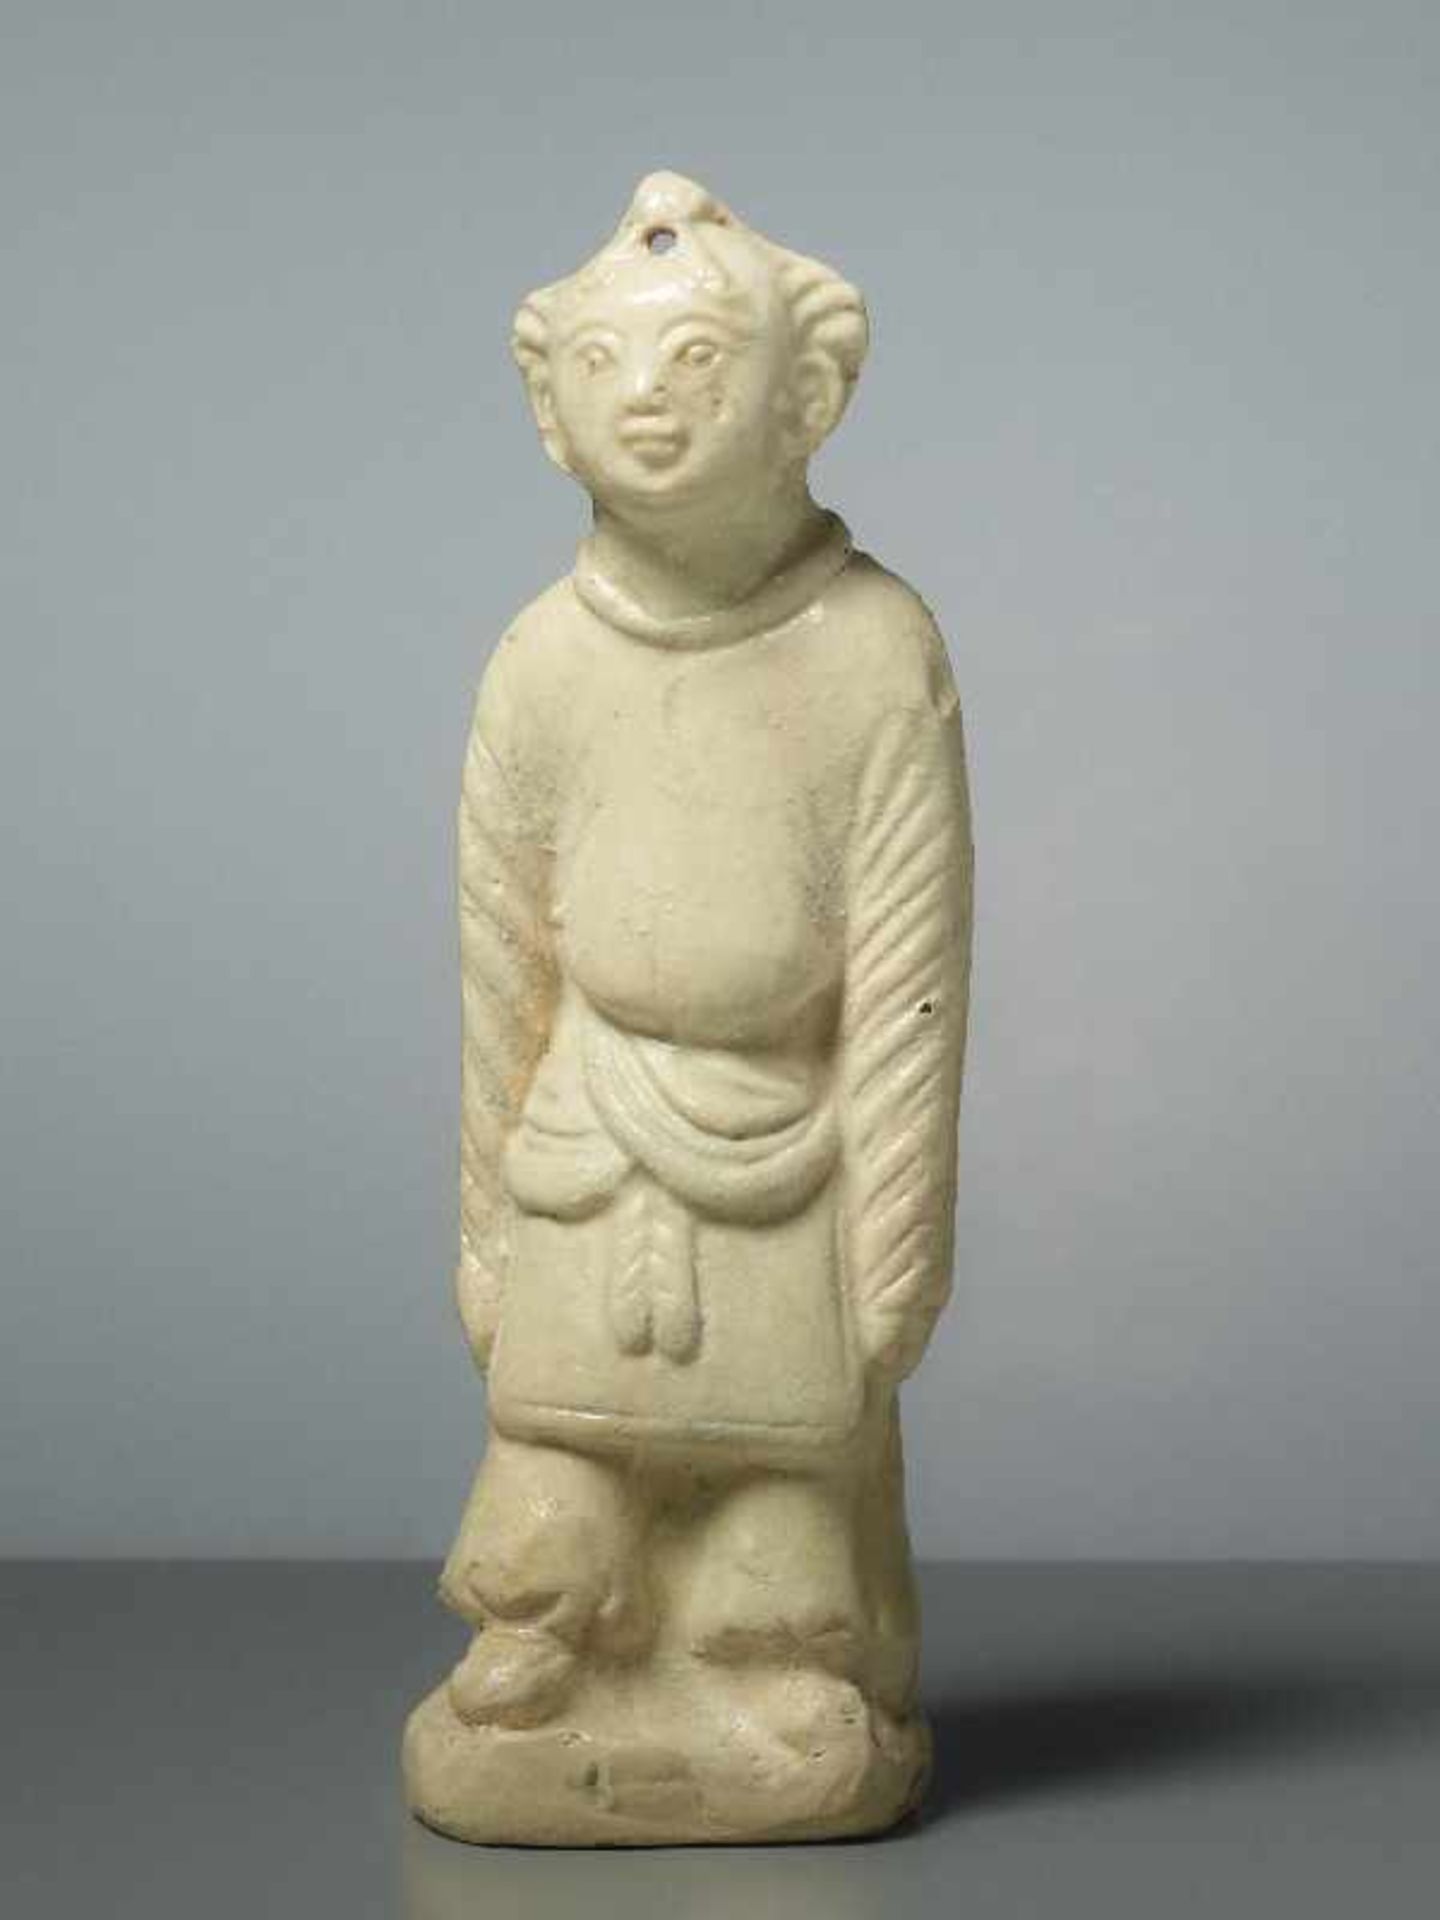 FIGUR EINES GLÜCKSKNABEN Glasierte Keramik. China, Song, ungefähr 12. Jh. Ein Knabe in